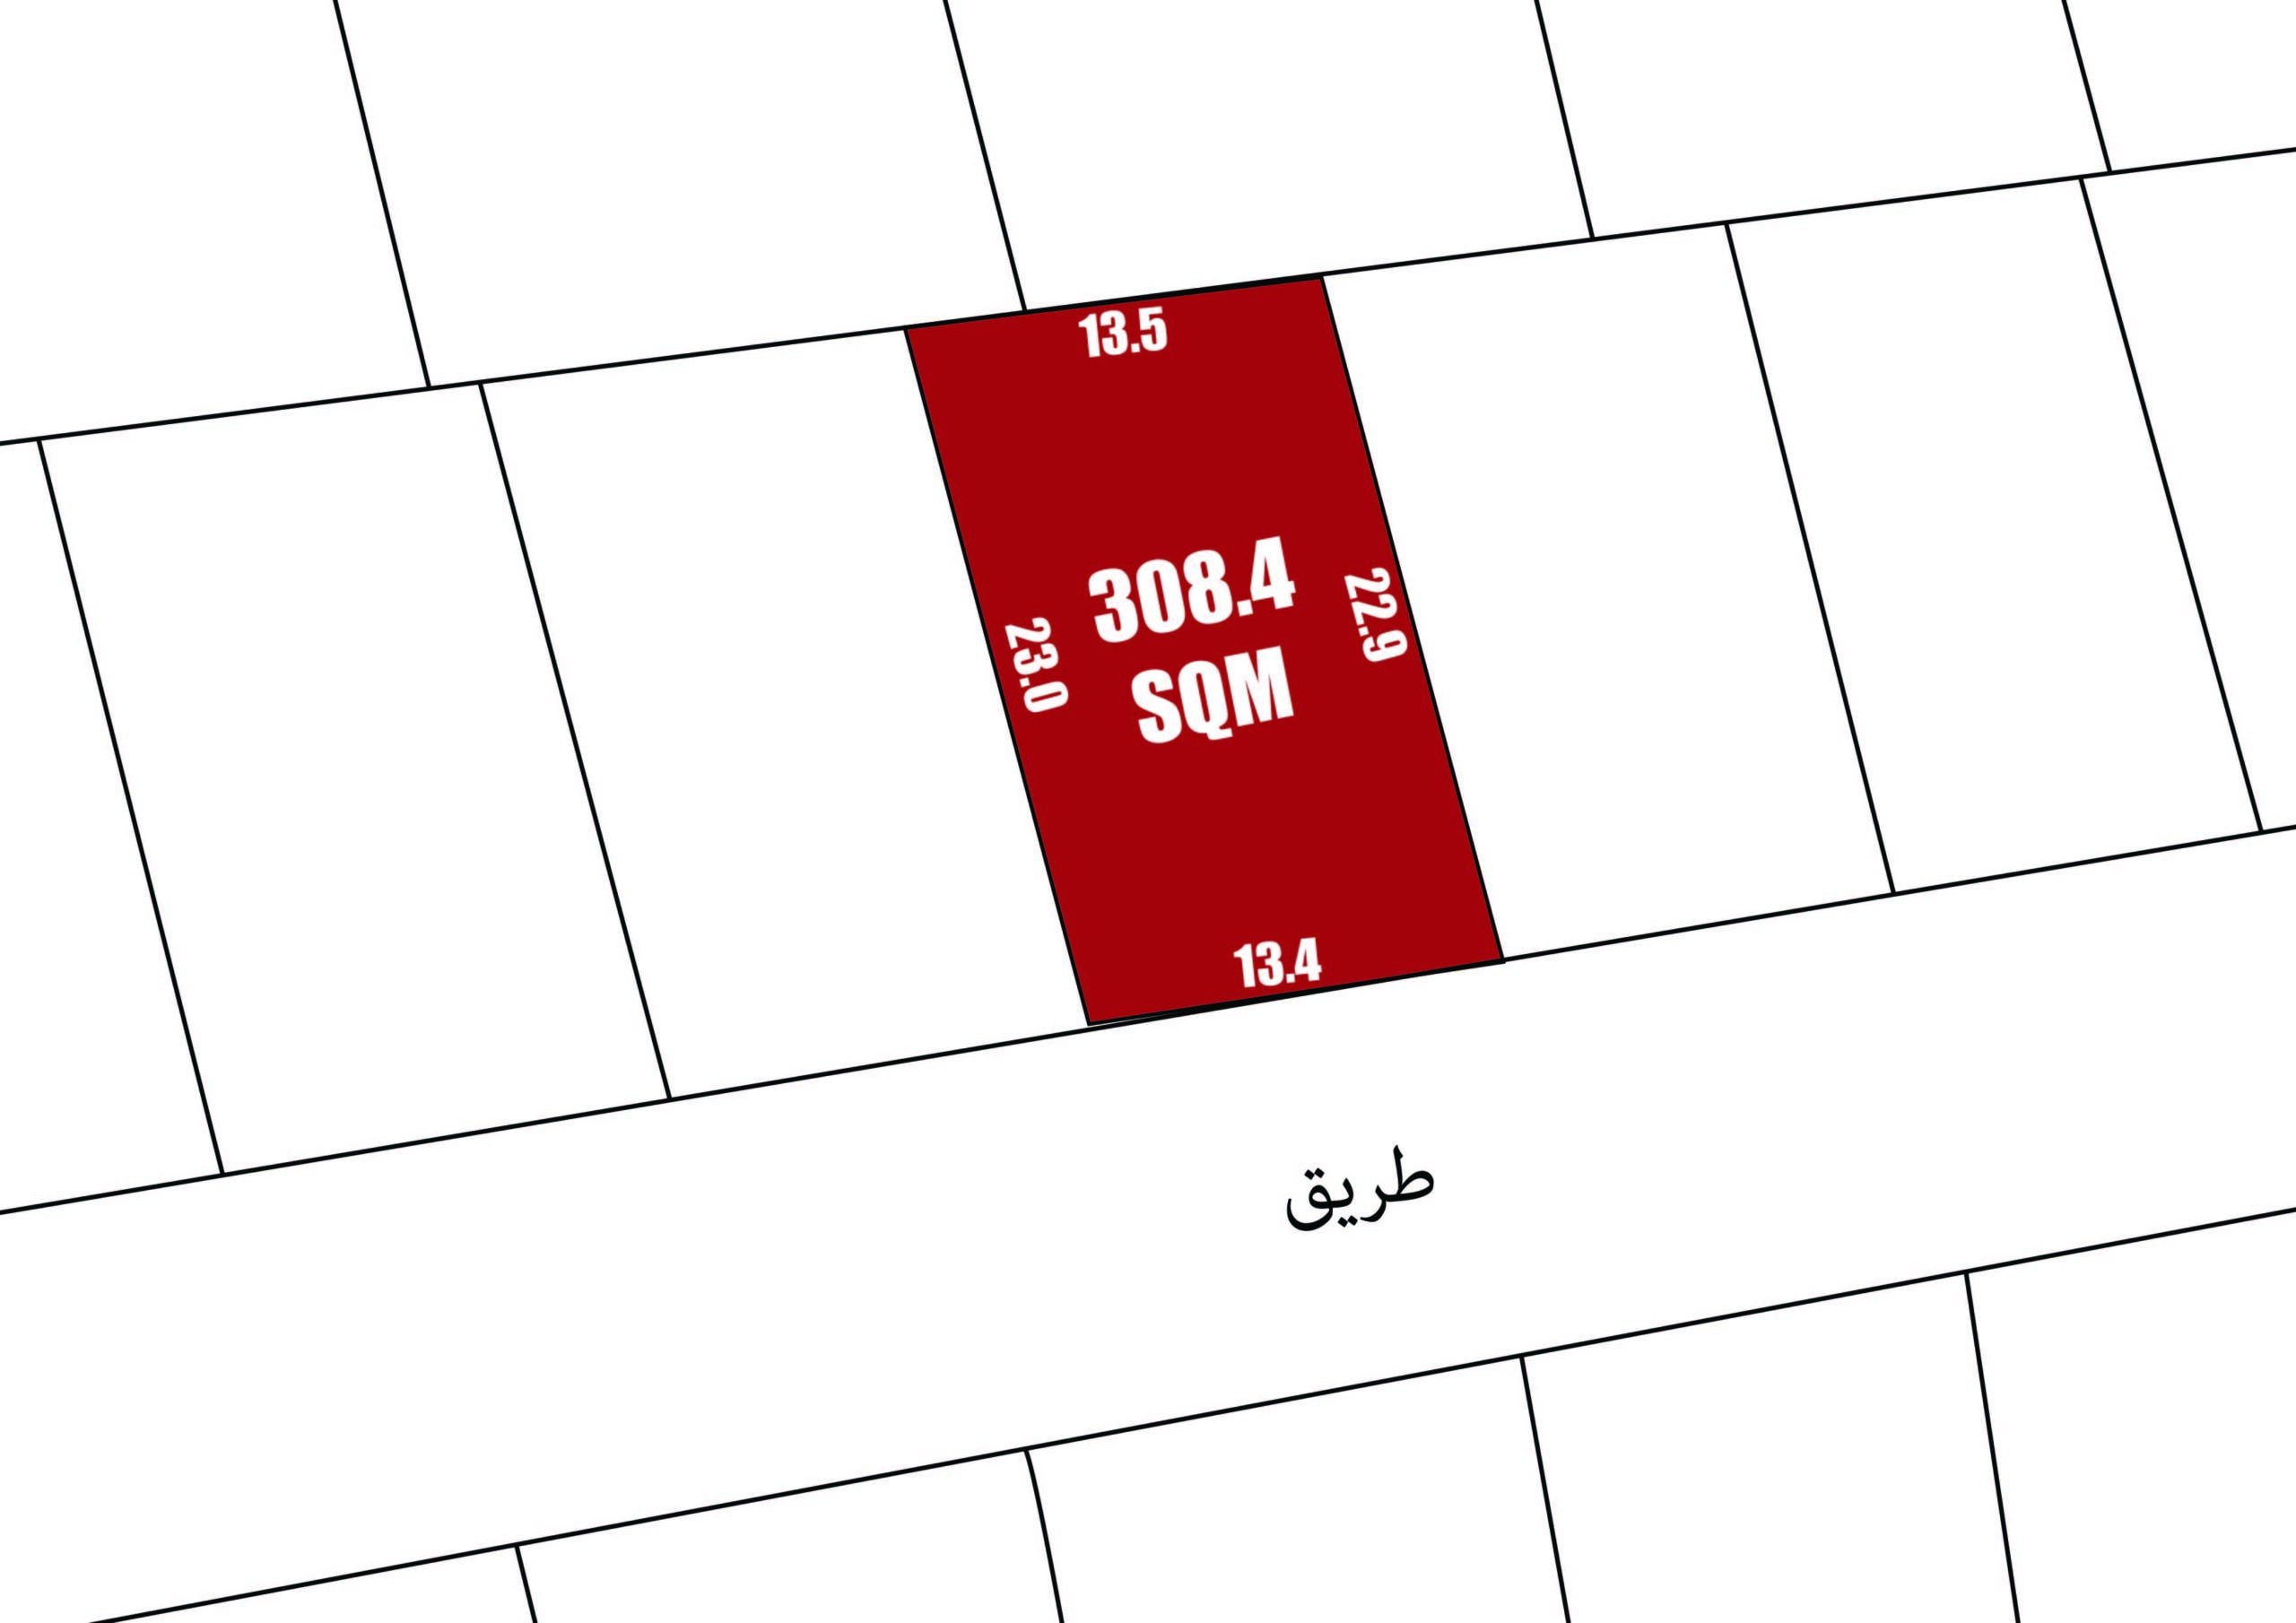 ارض للبيع في البديع | ٣٠٨.٤ متر مربع | هاوس مي